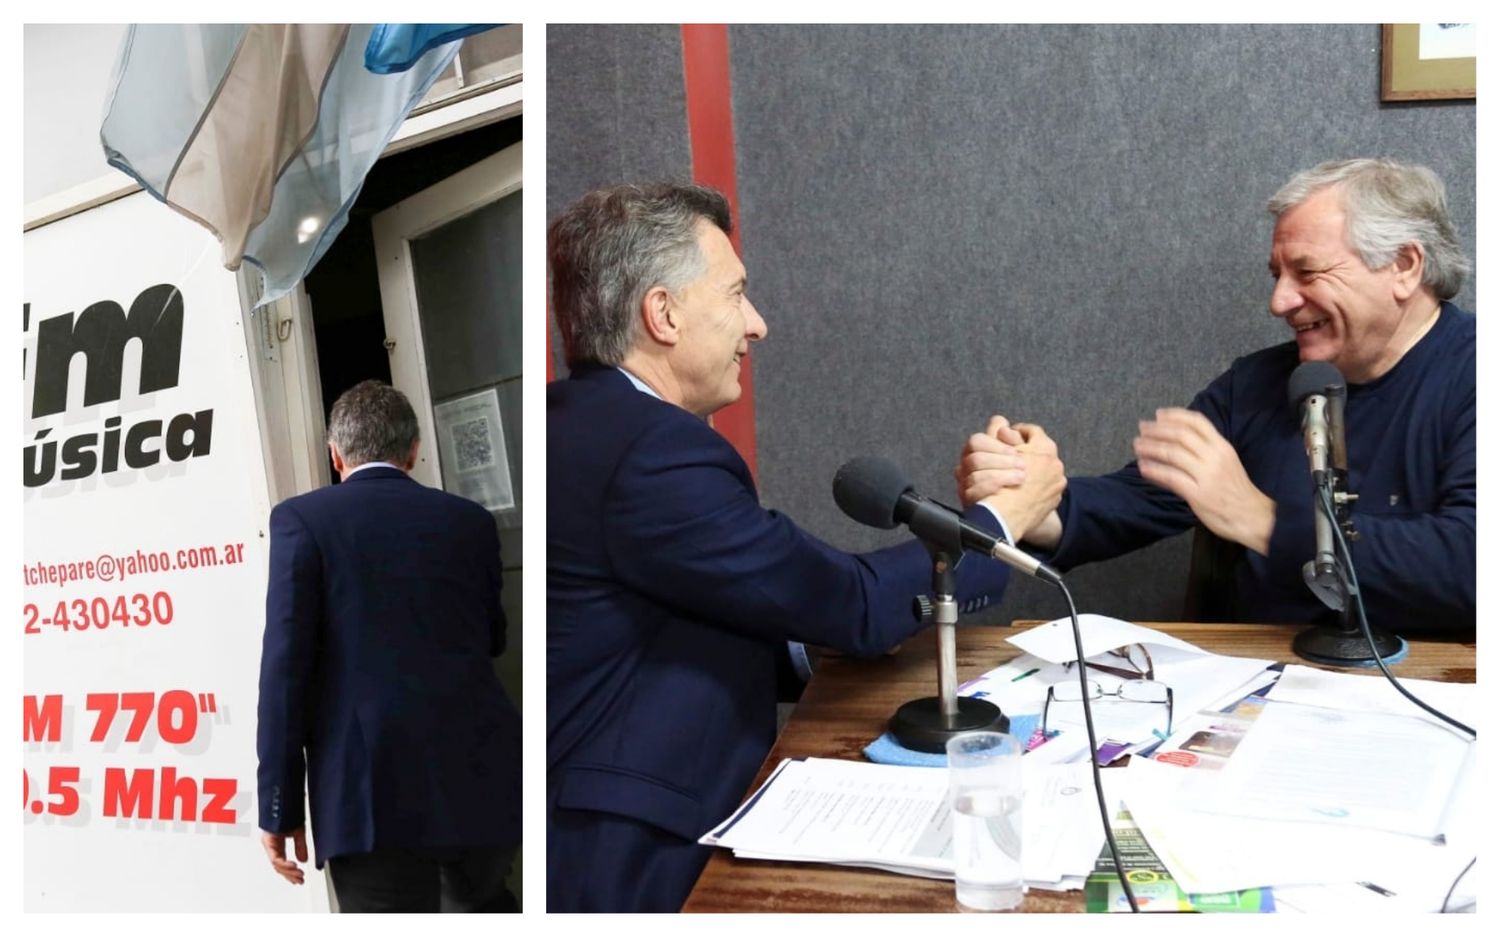 Así fue la sorpresiva visita de Macri a una radio de Trenque Lauquen: "Todavía no caemos"